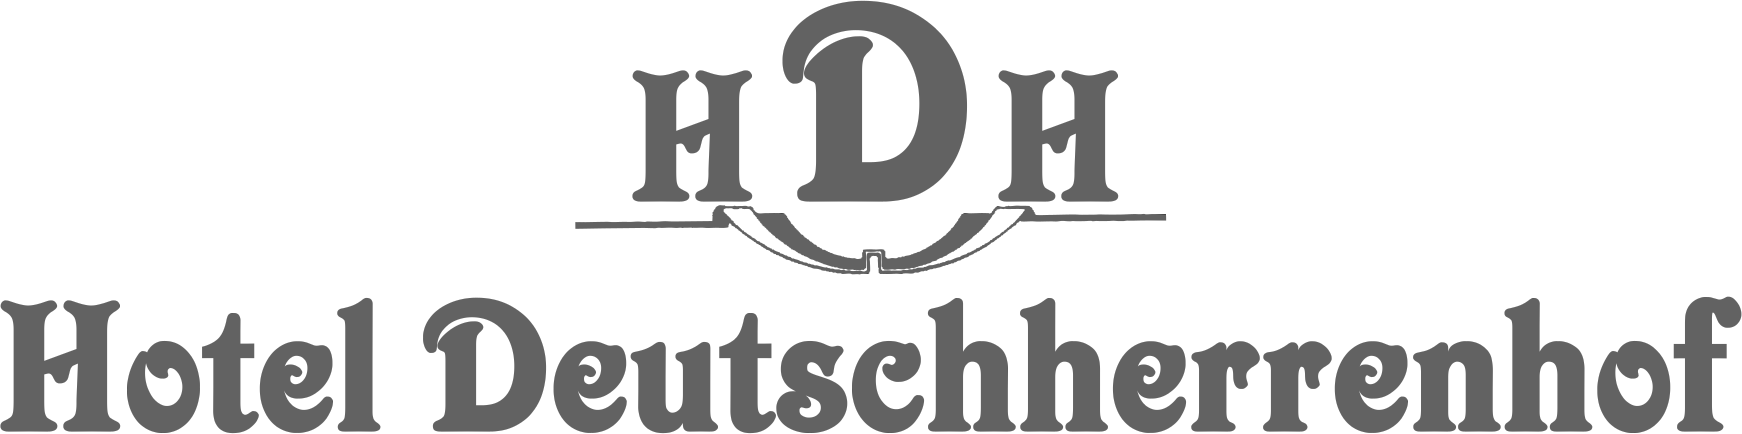 Hotel Deutschherrenhof Trier